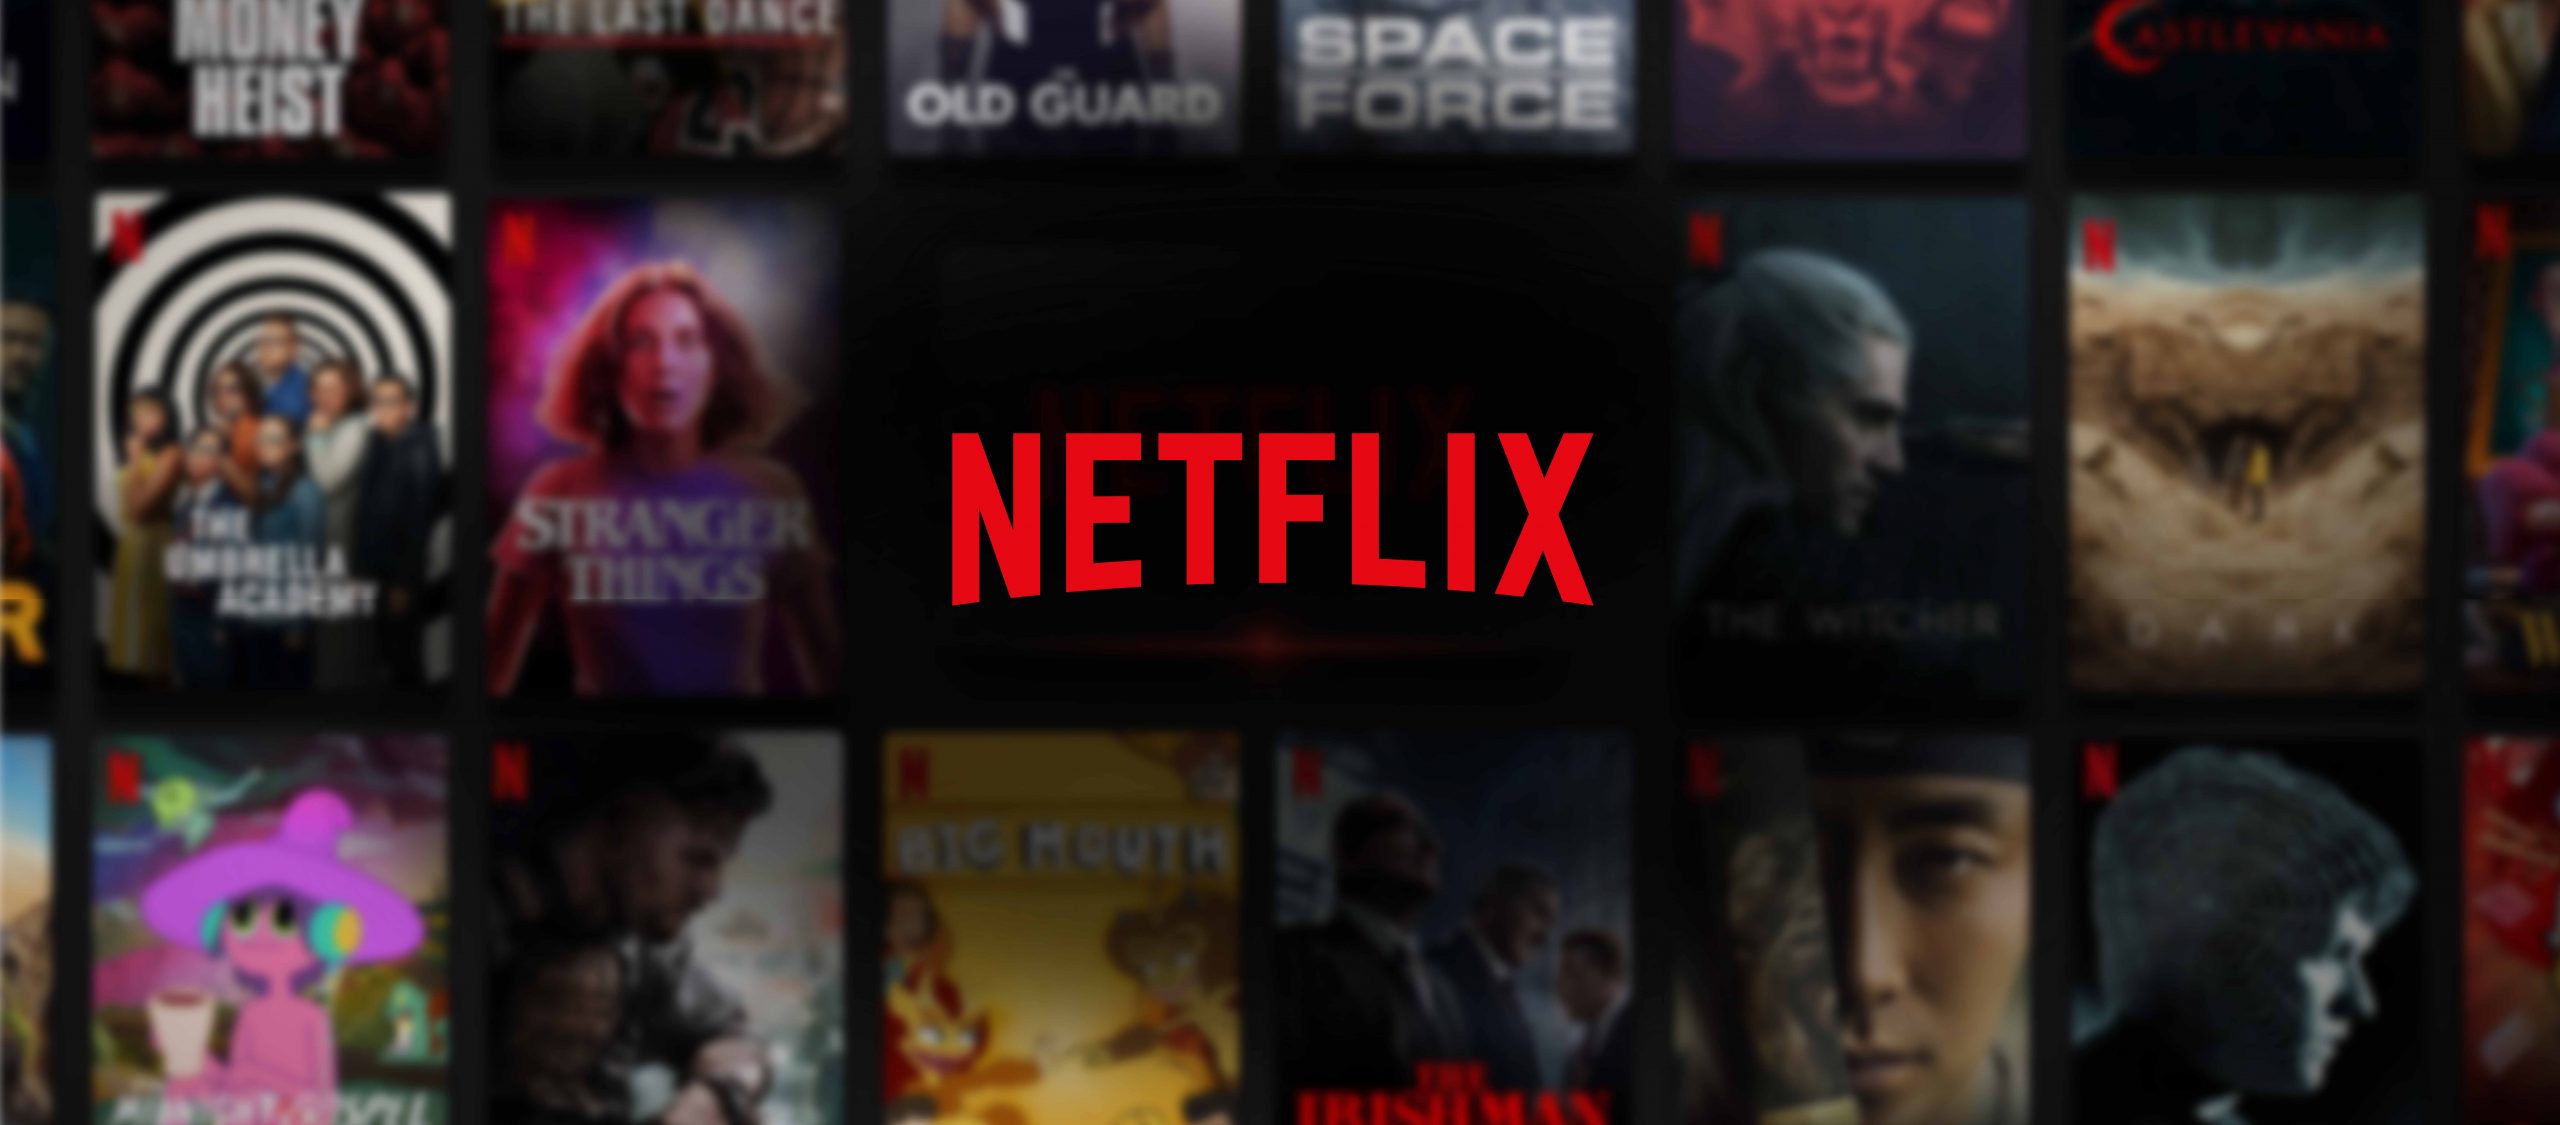 Netflix เส้นมาตรฐานใหม่ของอุตสาหกรรมบันเทิงที่มาพร้อมการเรียนรู้